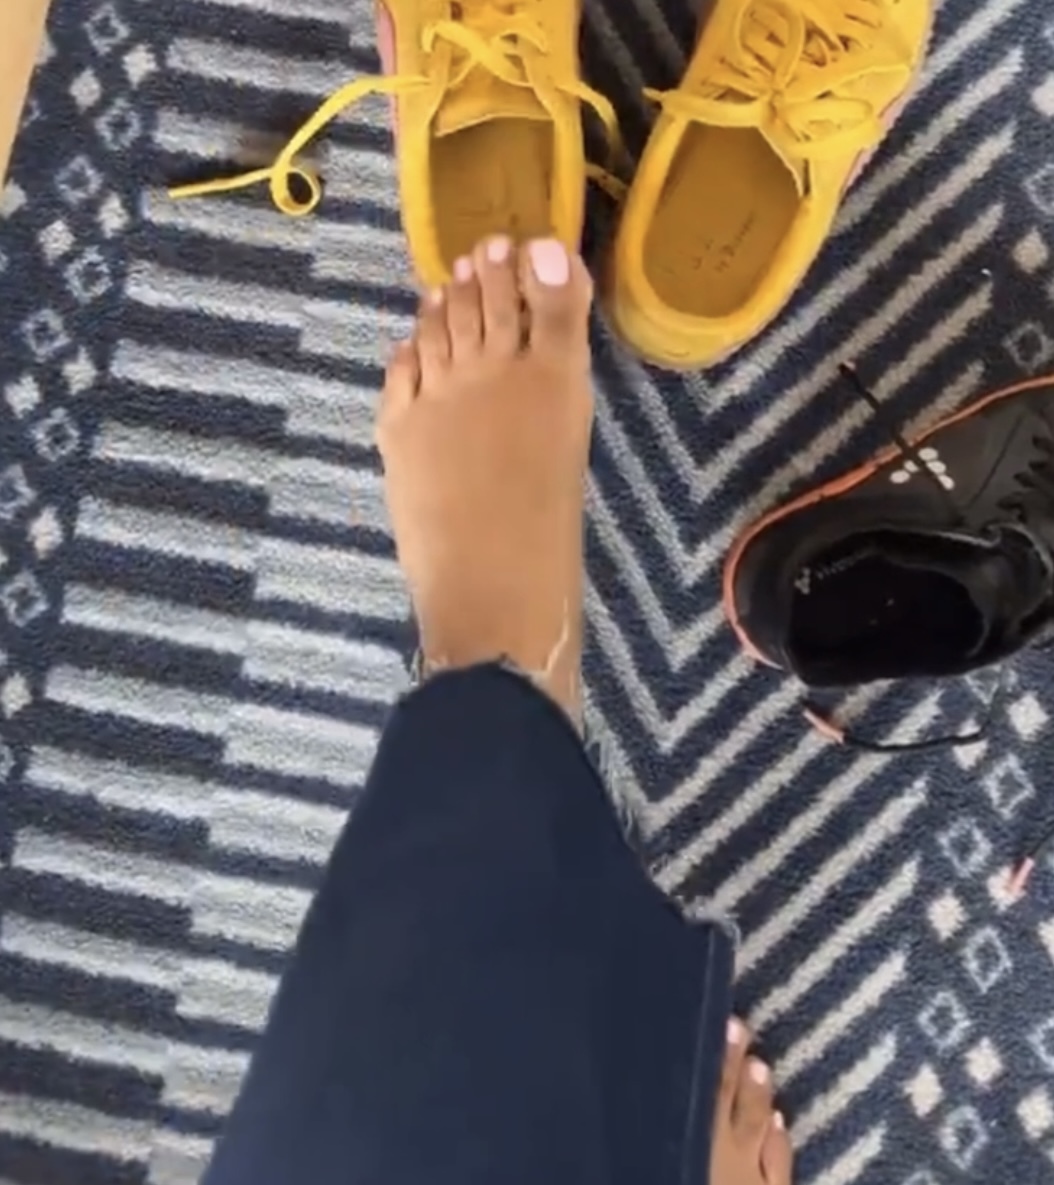 Aarti Sequeira Feet